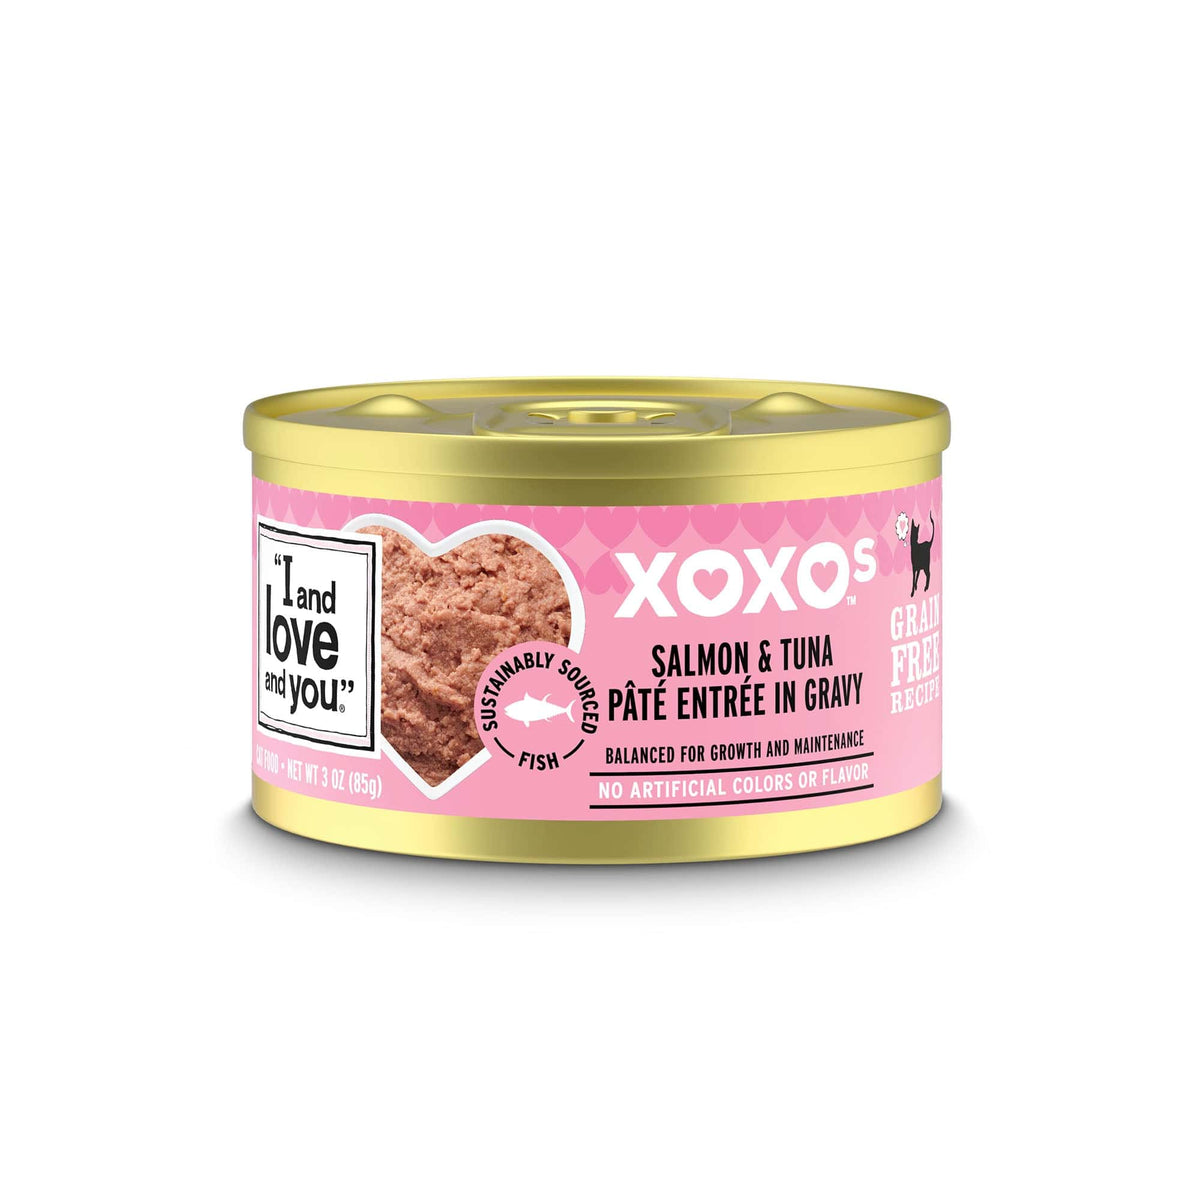 XOXOs Salmon & Tuna Pate